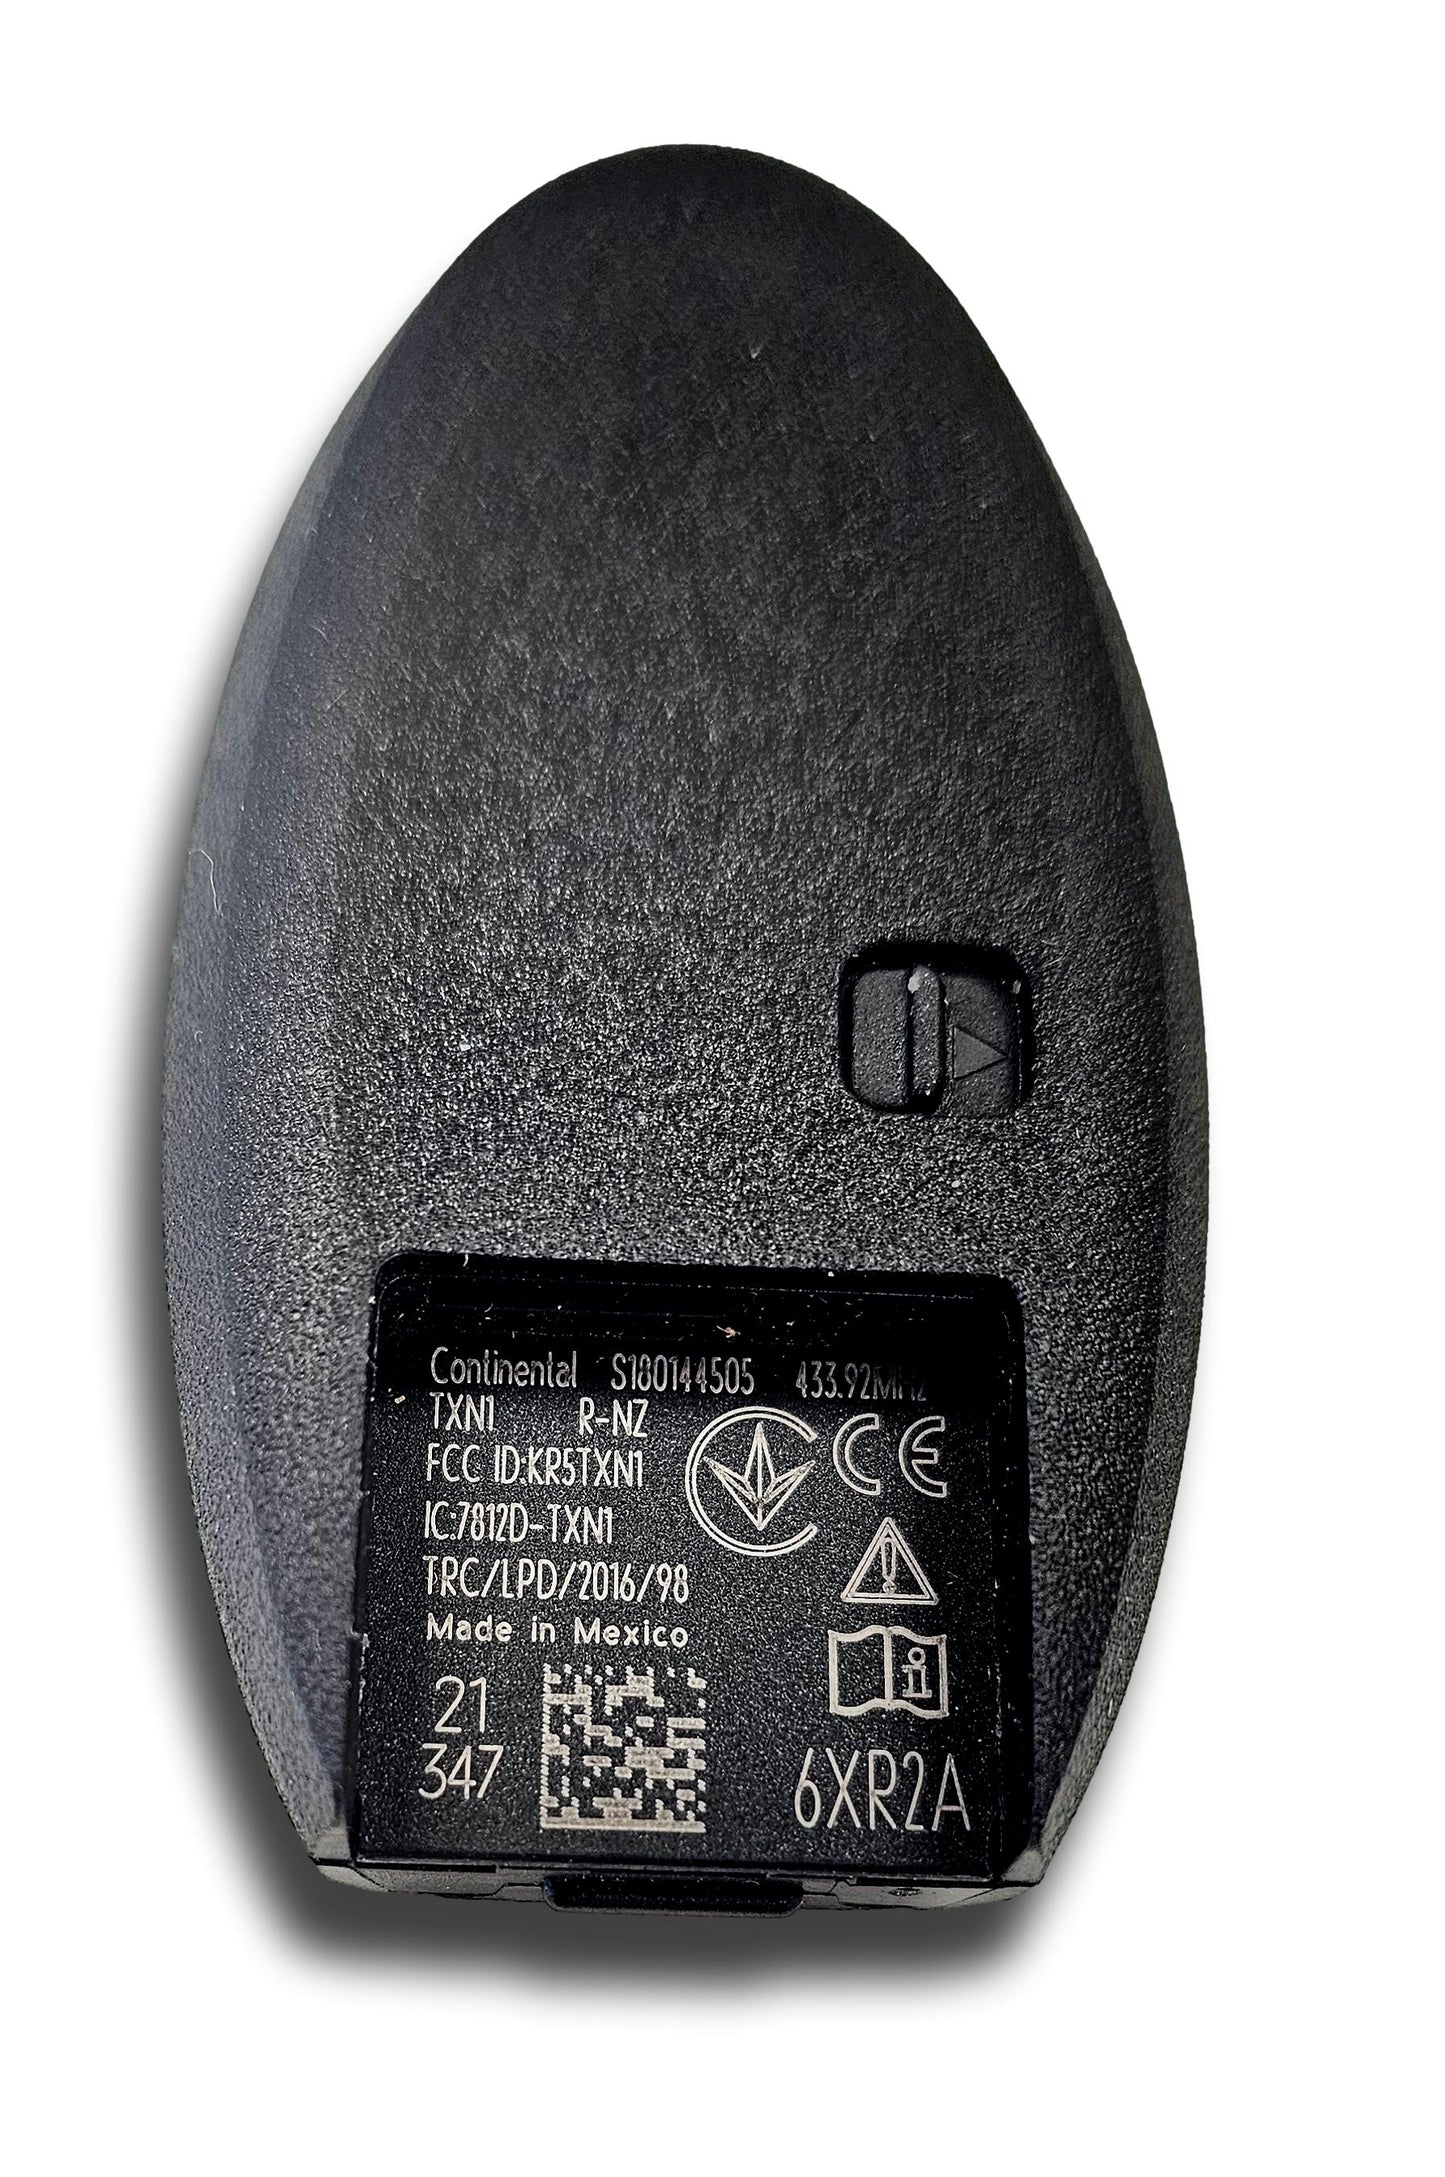 Nuova Nissan Remote Key Remote Remote remoto NISSAN autentica 285E3 6xr2a